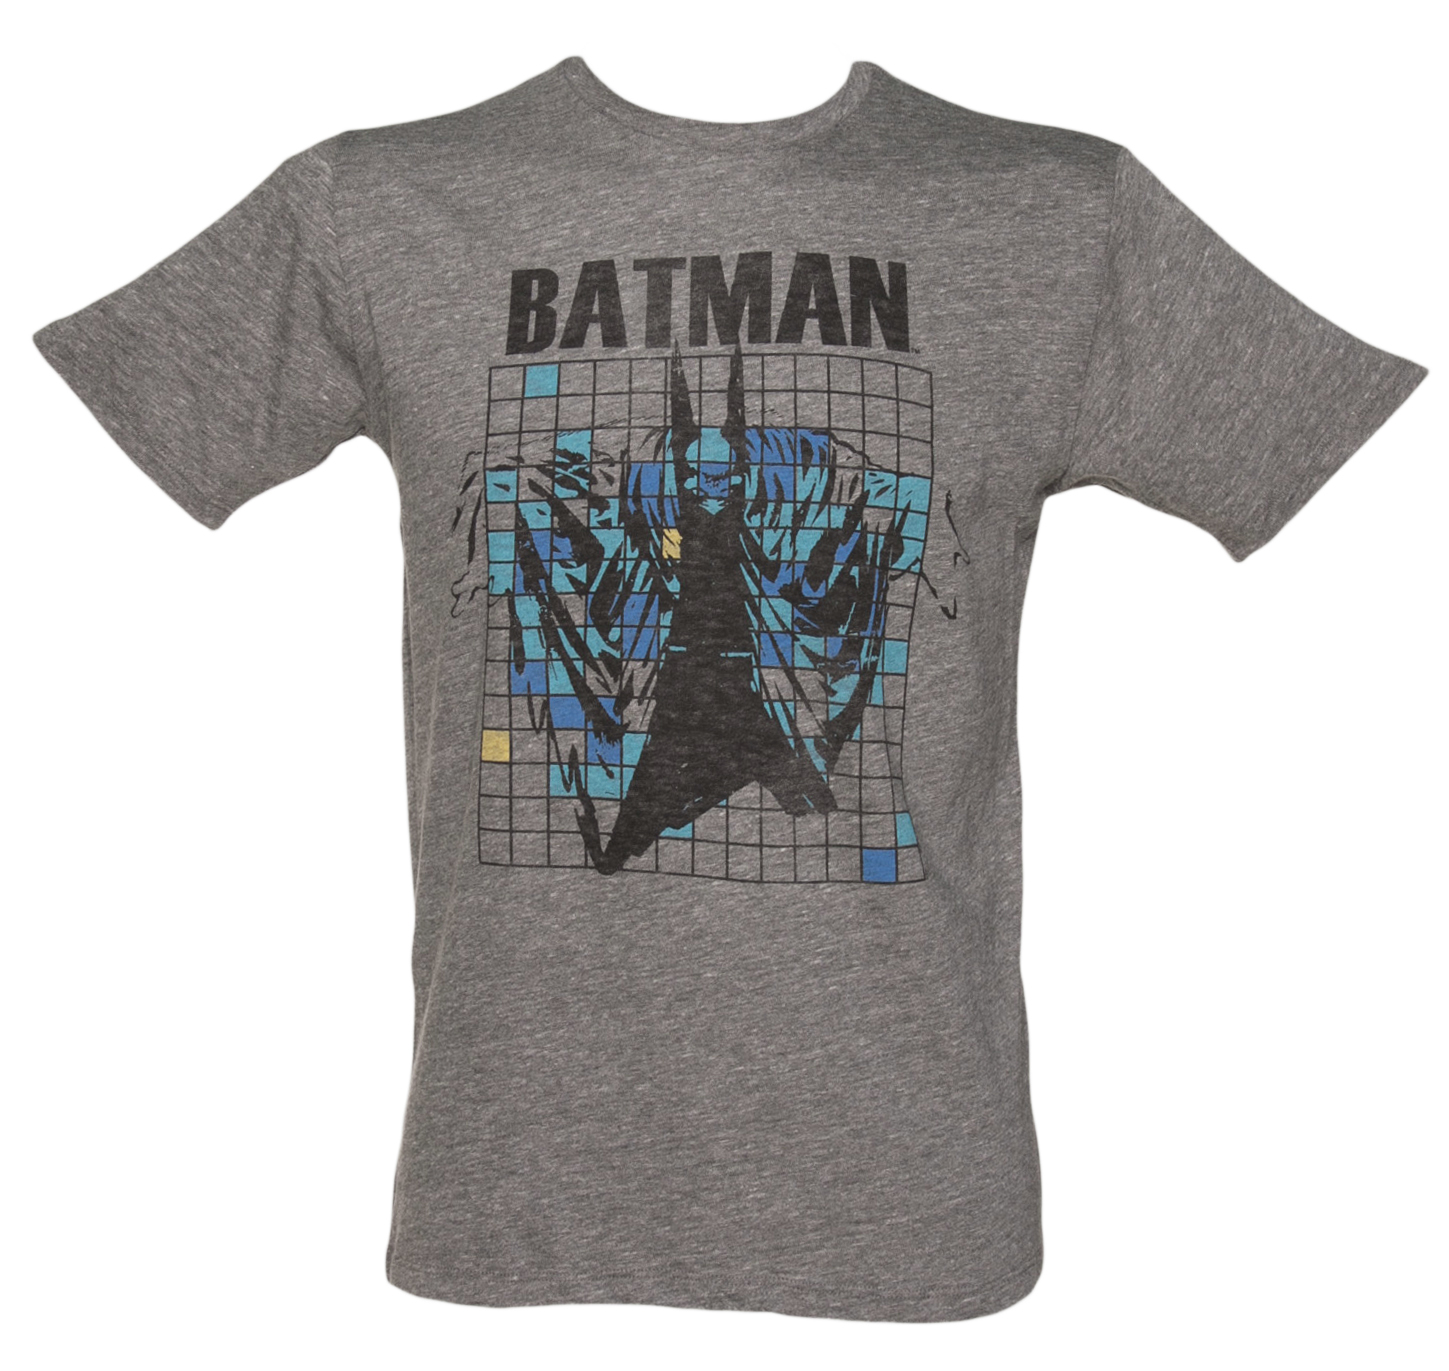 Mens Grey Grid Batman T-Shirt from Junk Food